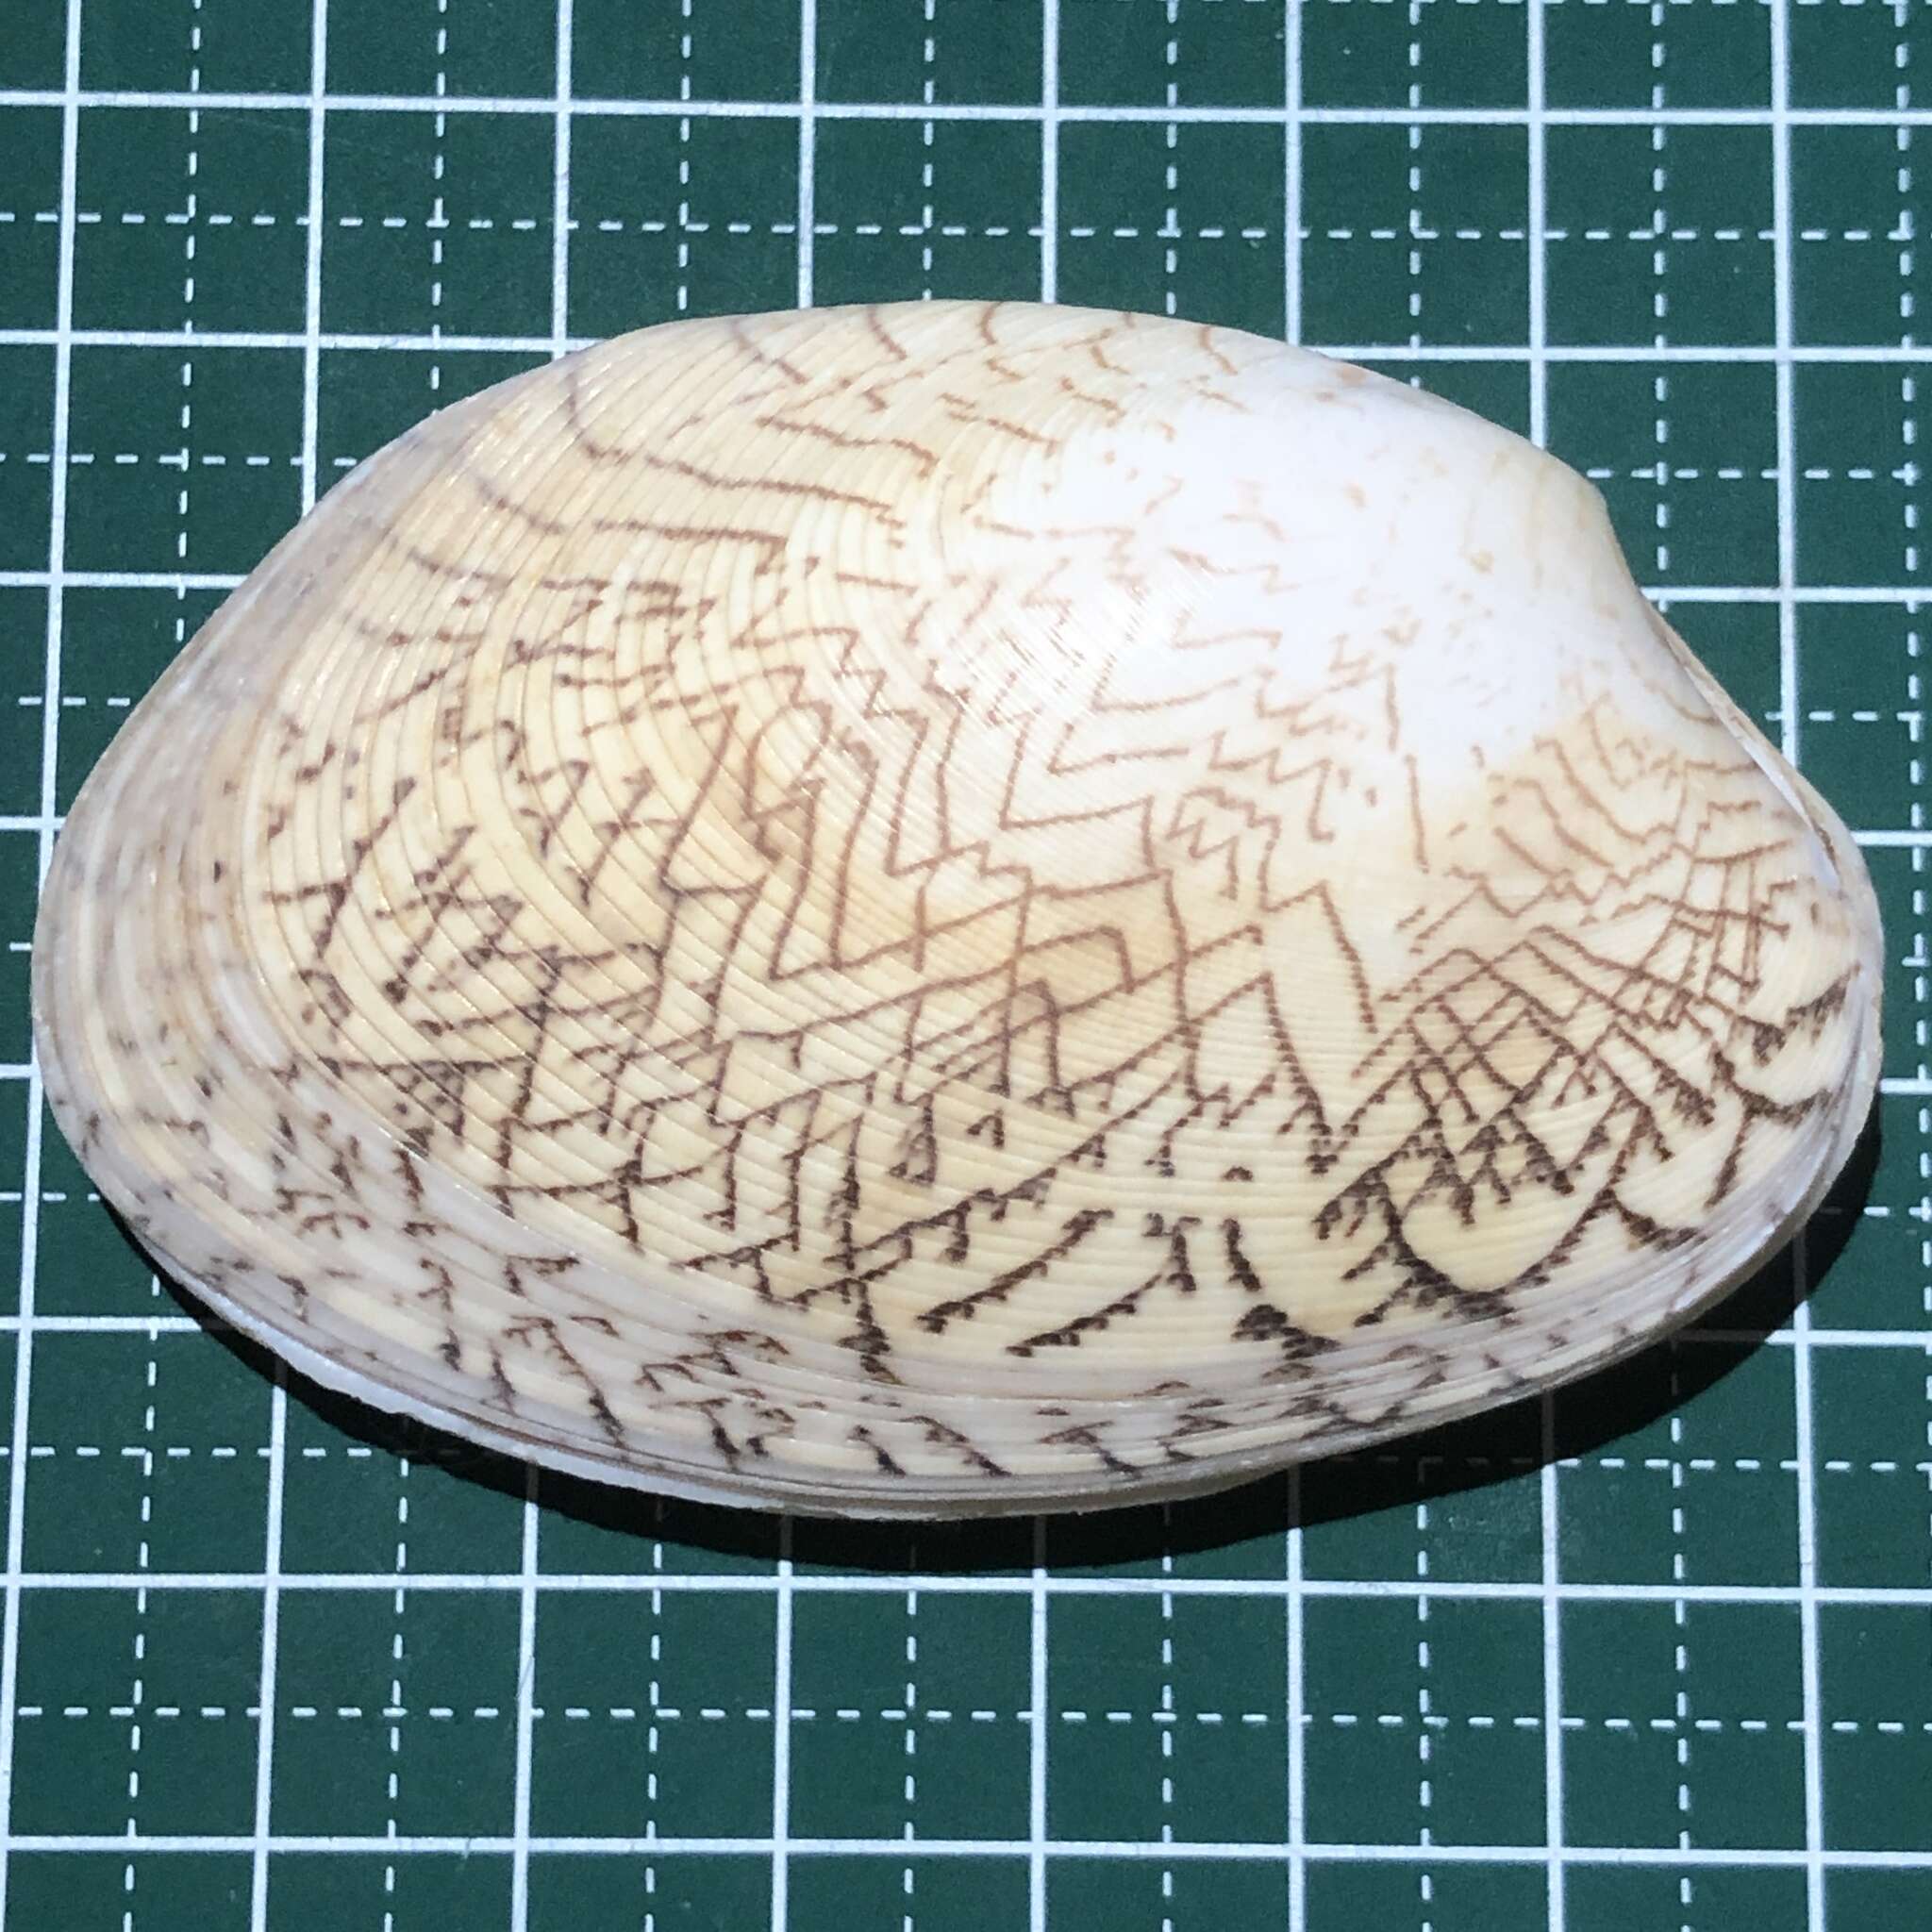 Image of lettered carpet shell